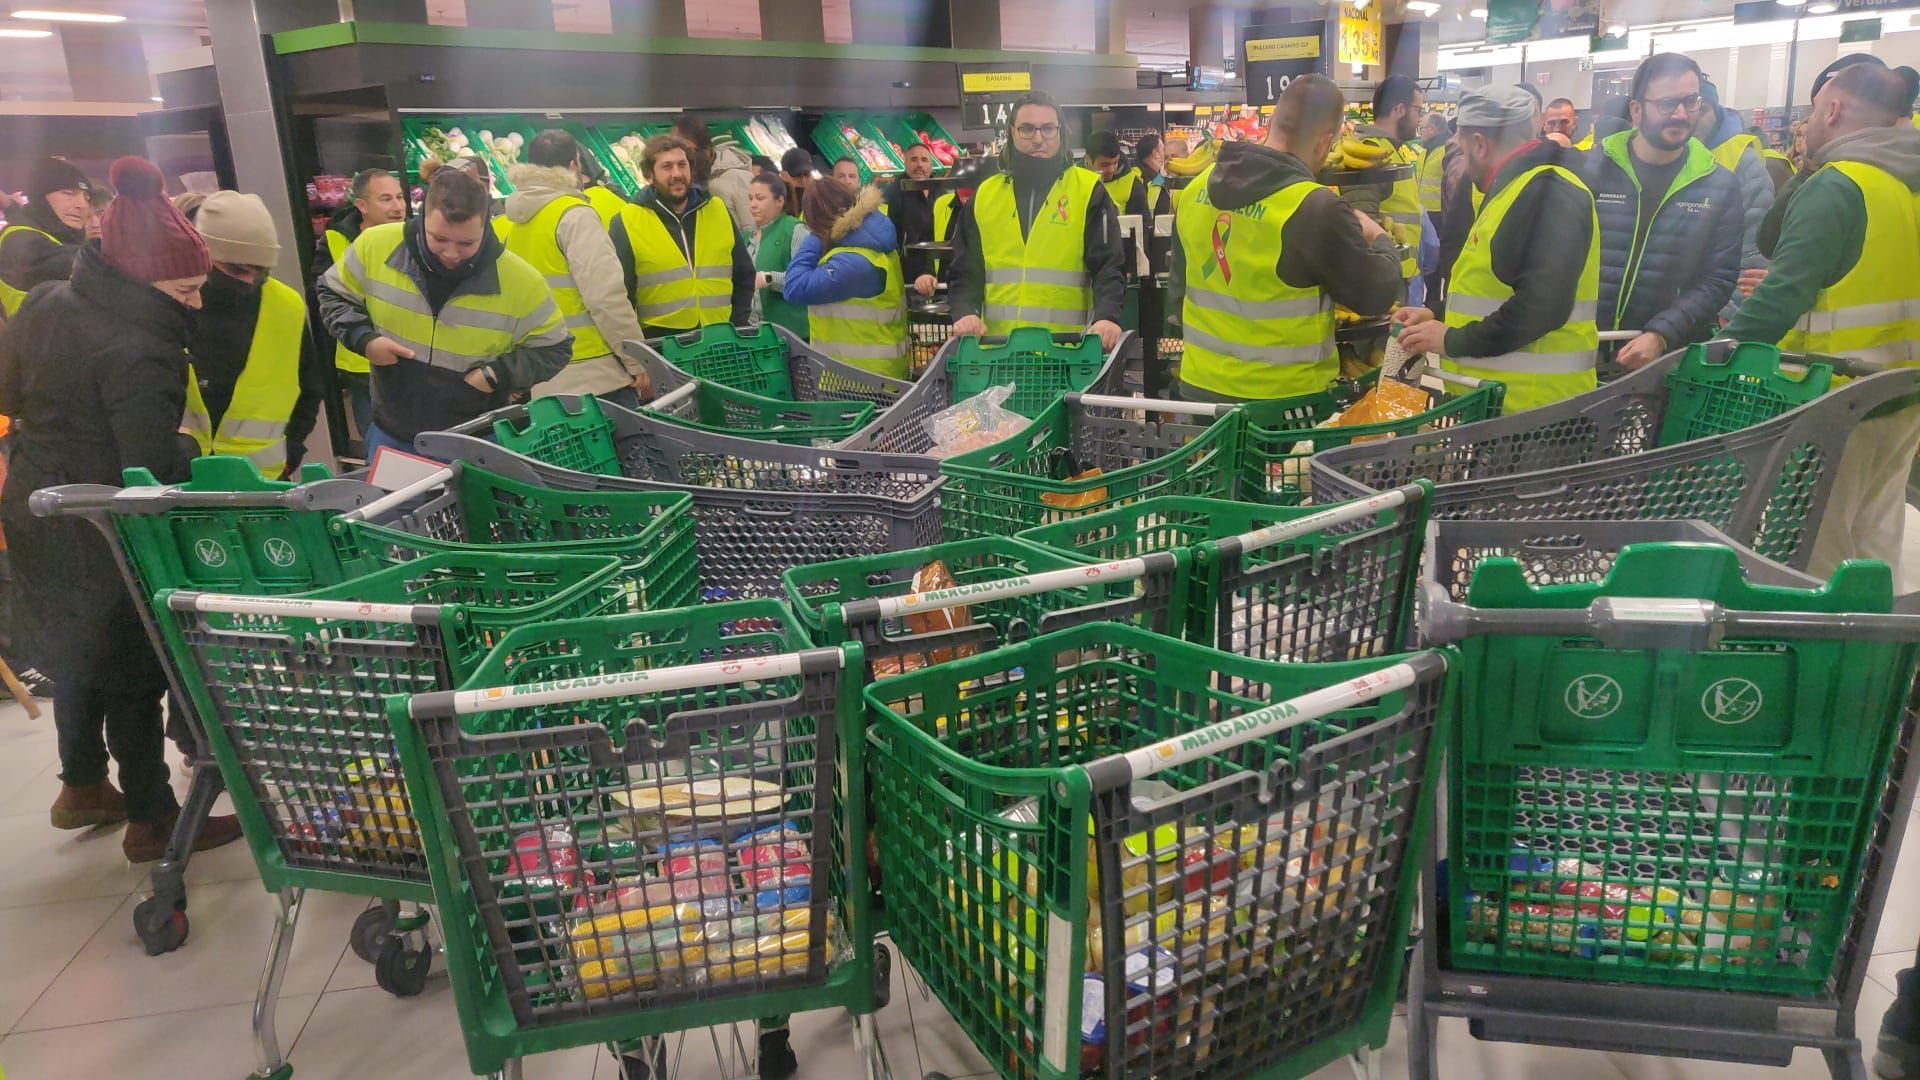 Manifestantes comprando los productos en el supermercado. | L.N.C.